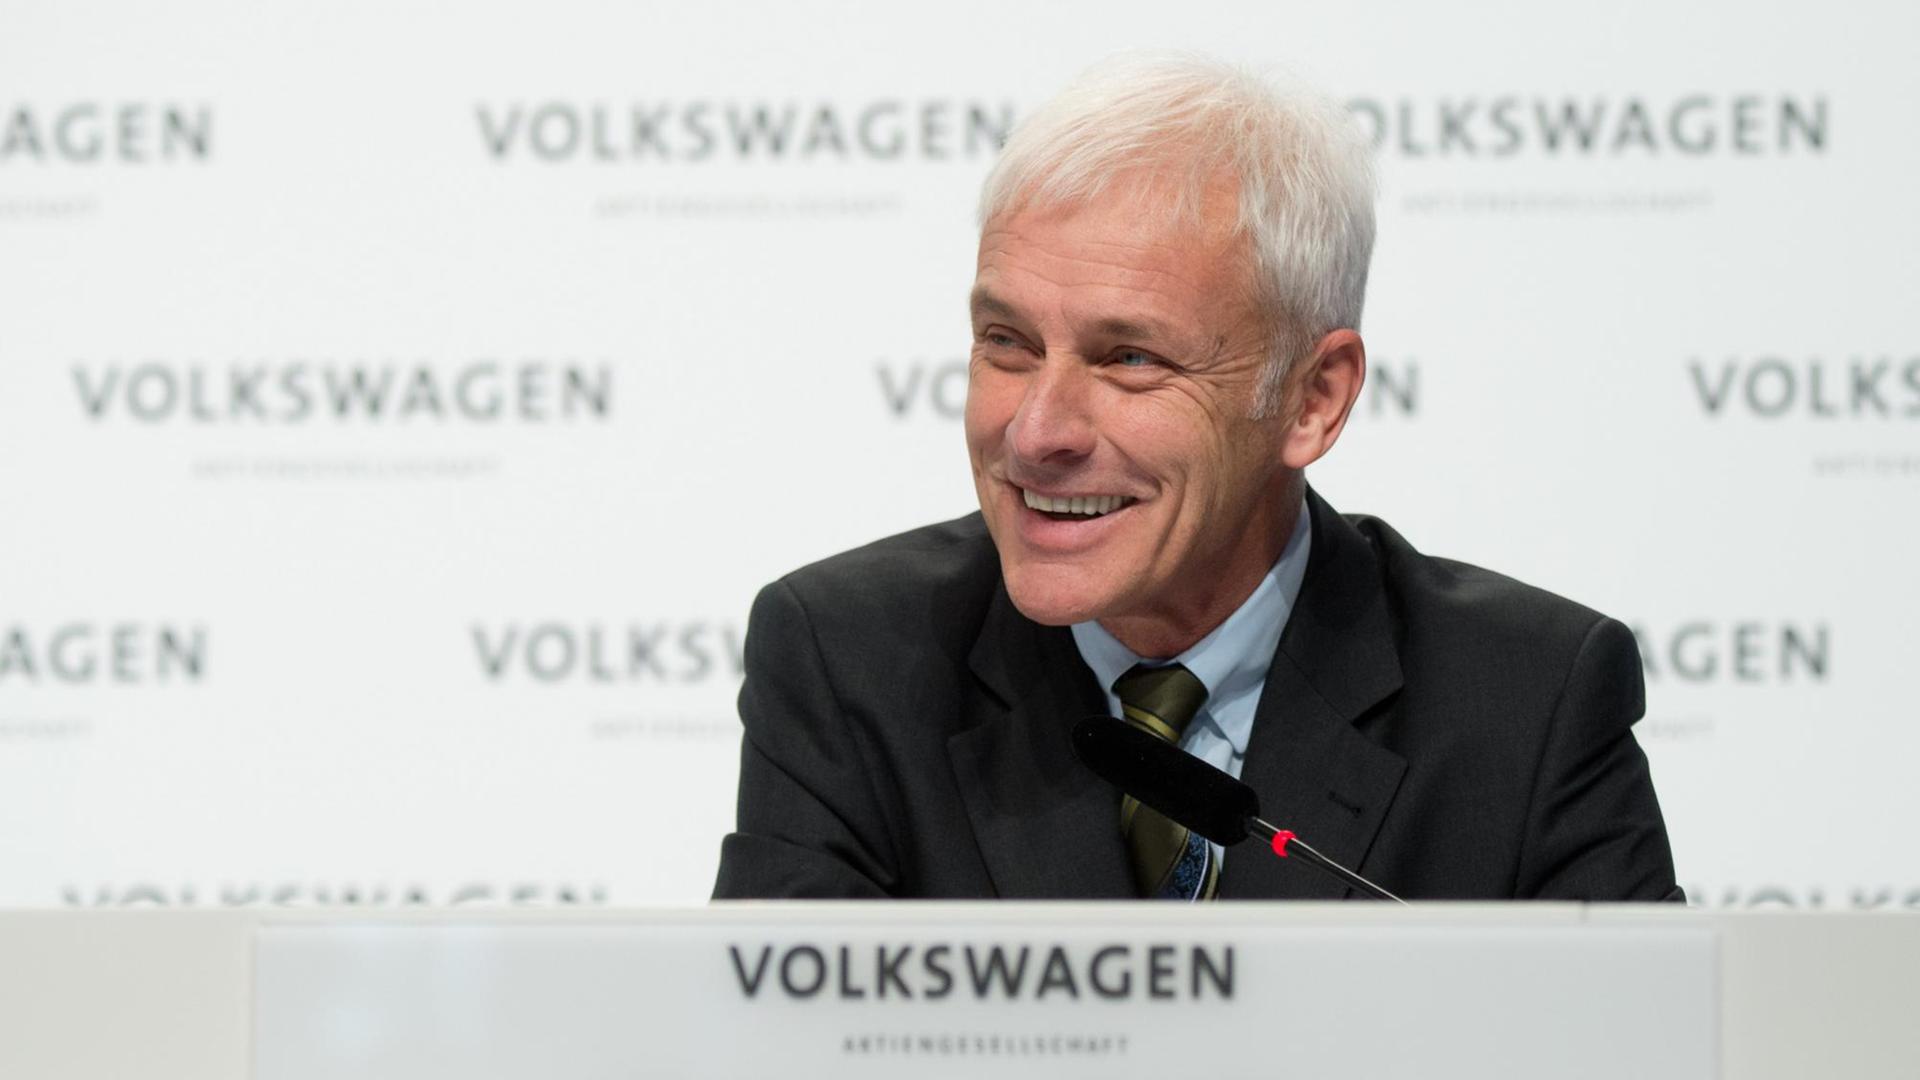 Matthias Müller, Vorstandsvorsitzender der Volkswagen AG, am 10.12.2015 bei einer Pressekonferenz von Volkswagen in Wolfsburg.